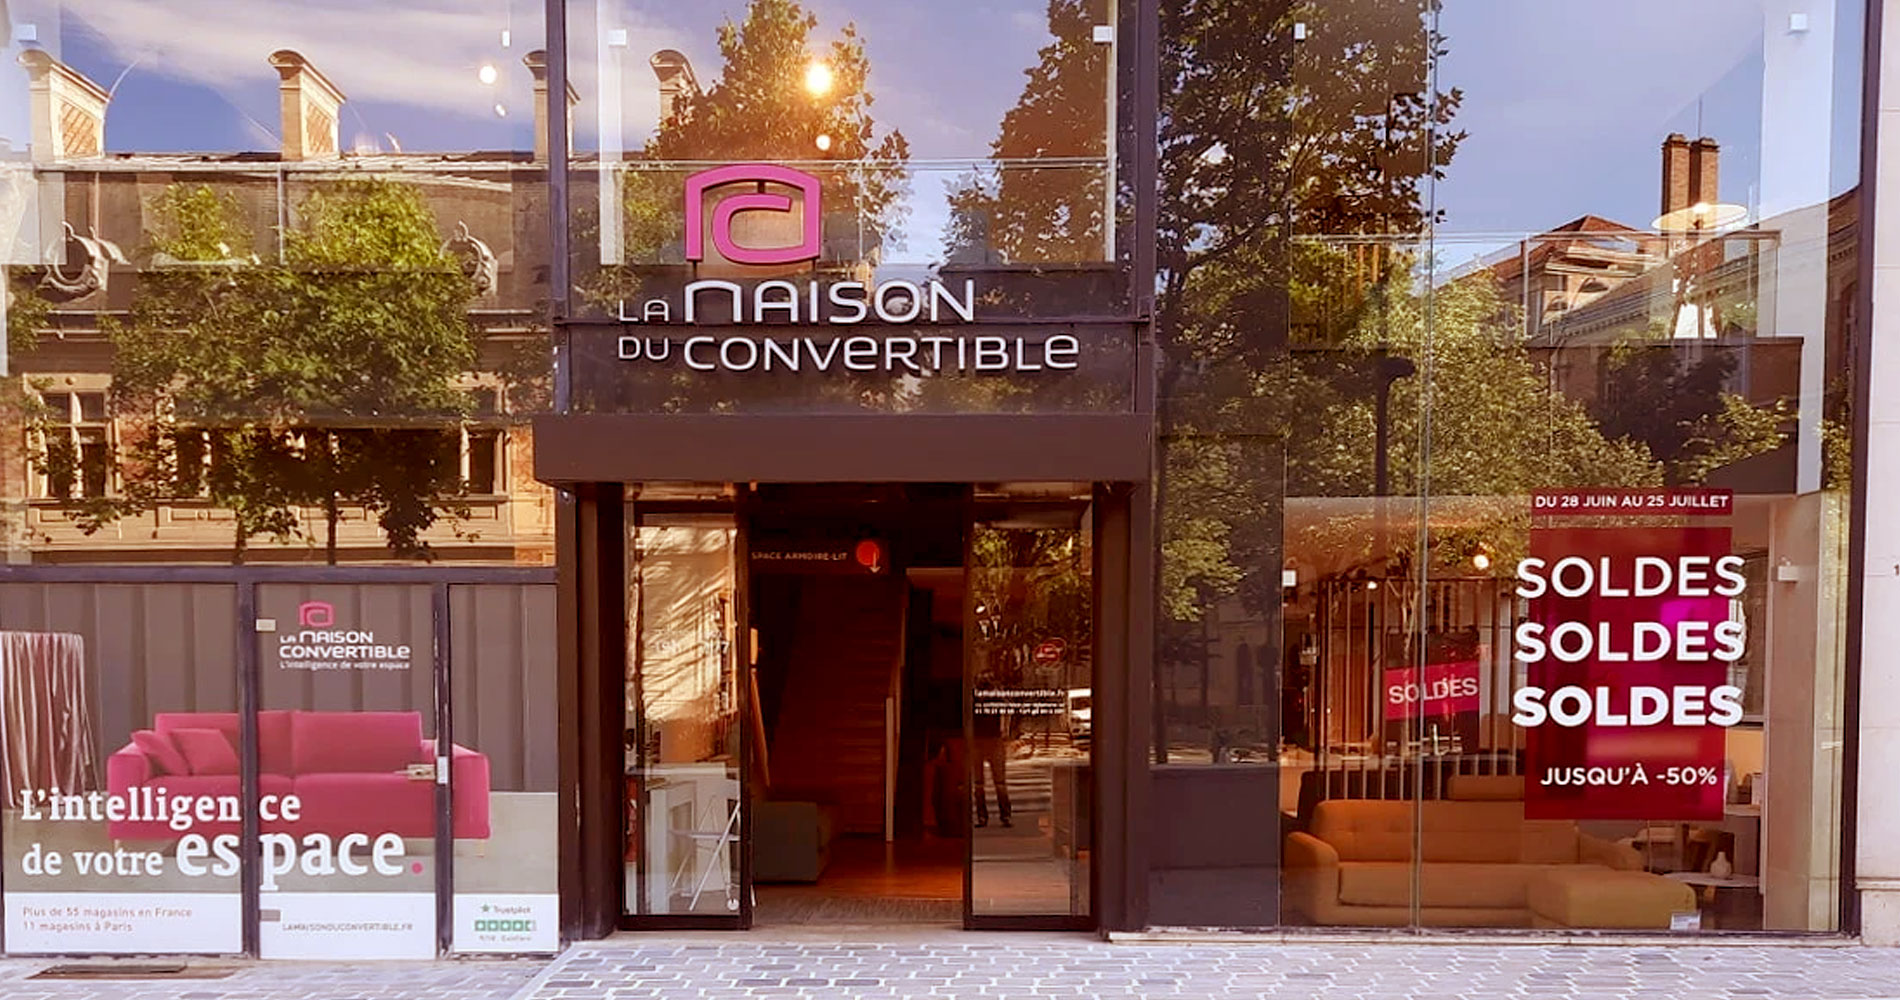 voir les magasins La maison convertible en France